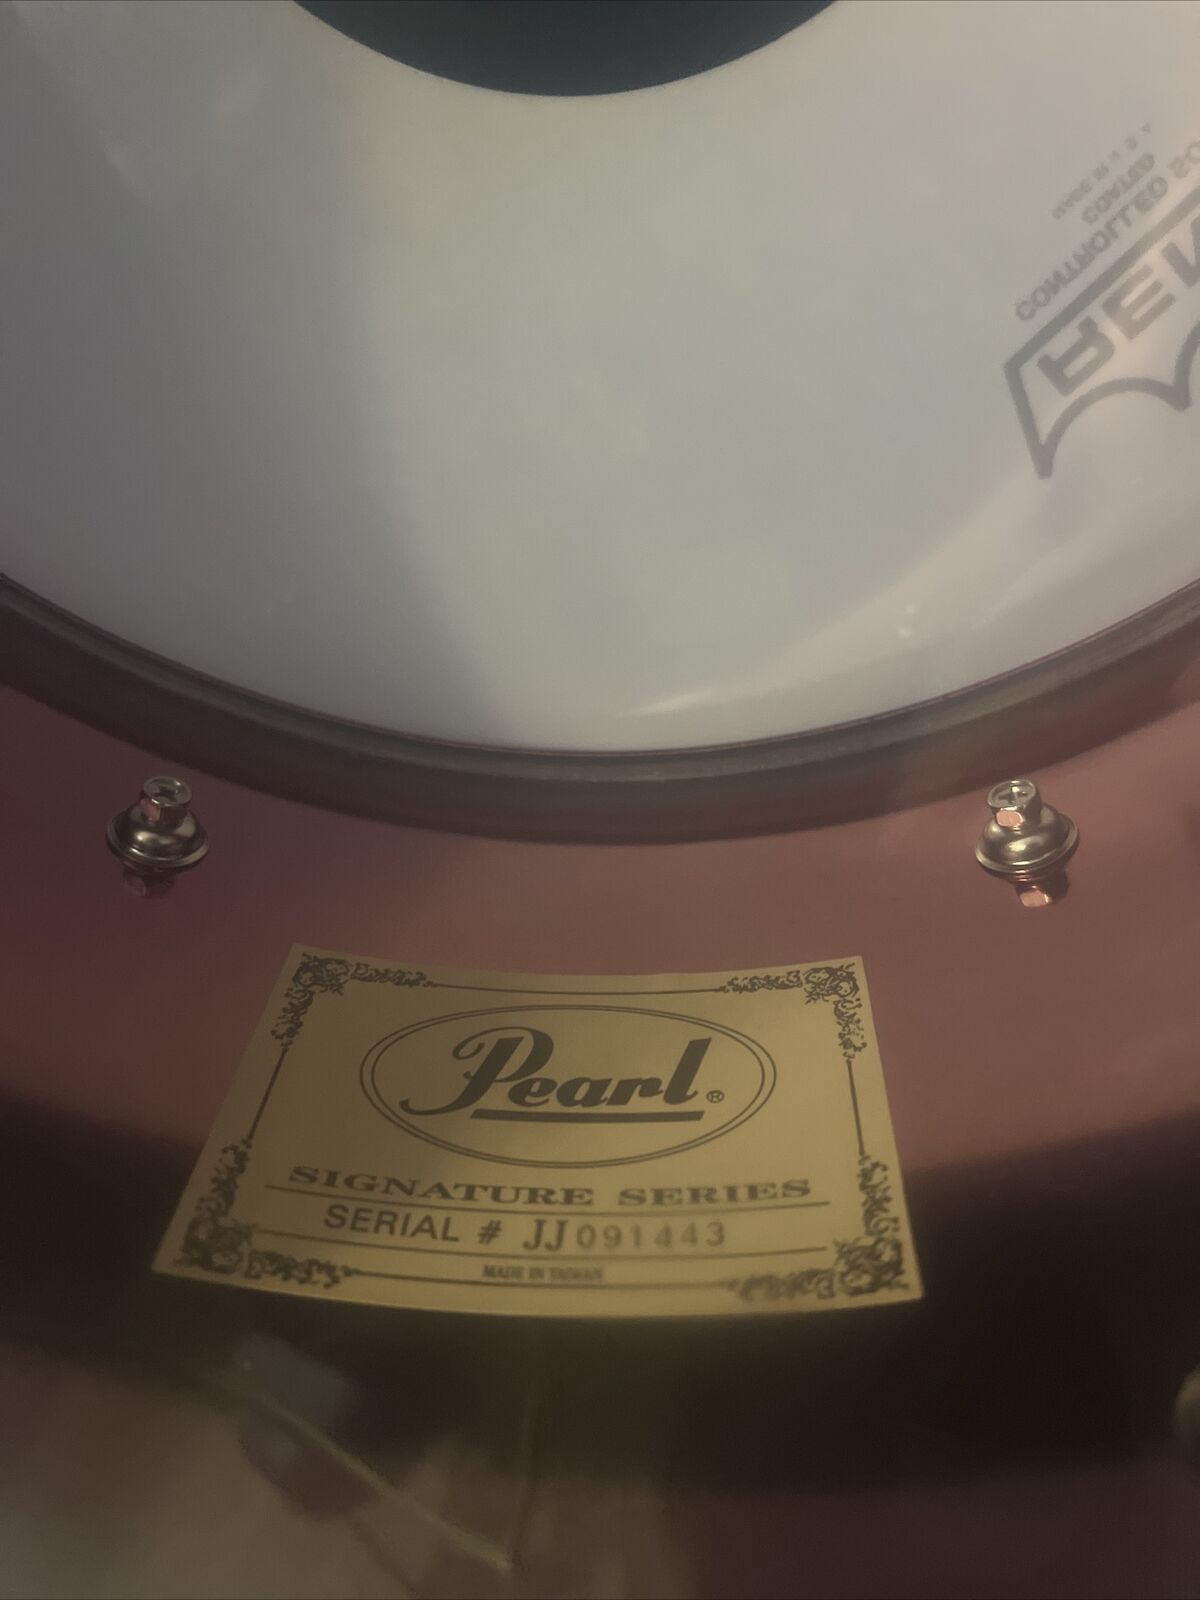 Pearl Signature Series Joey Jordison Snare Drum Serial Number JJ091443 2